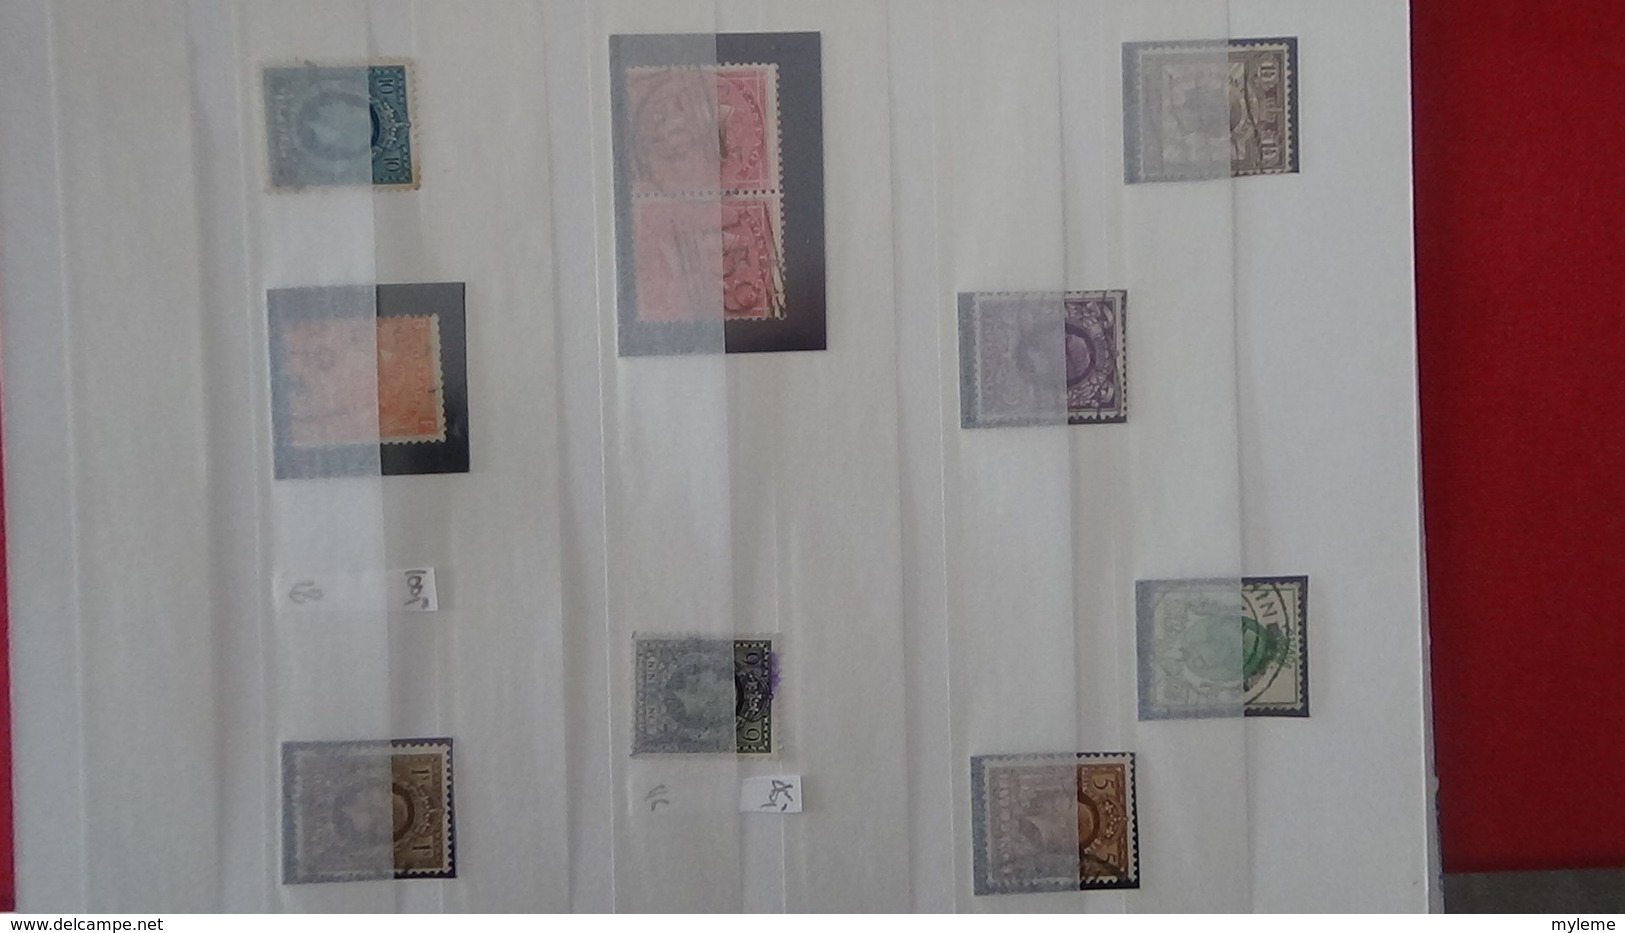 Bon ensemble d'Anciens timbres ( émis avant 1900) d'Angleterre dont 1 lettre.Côte sympa